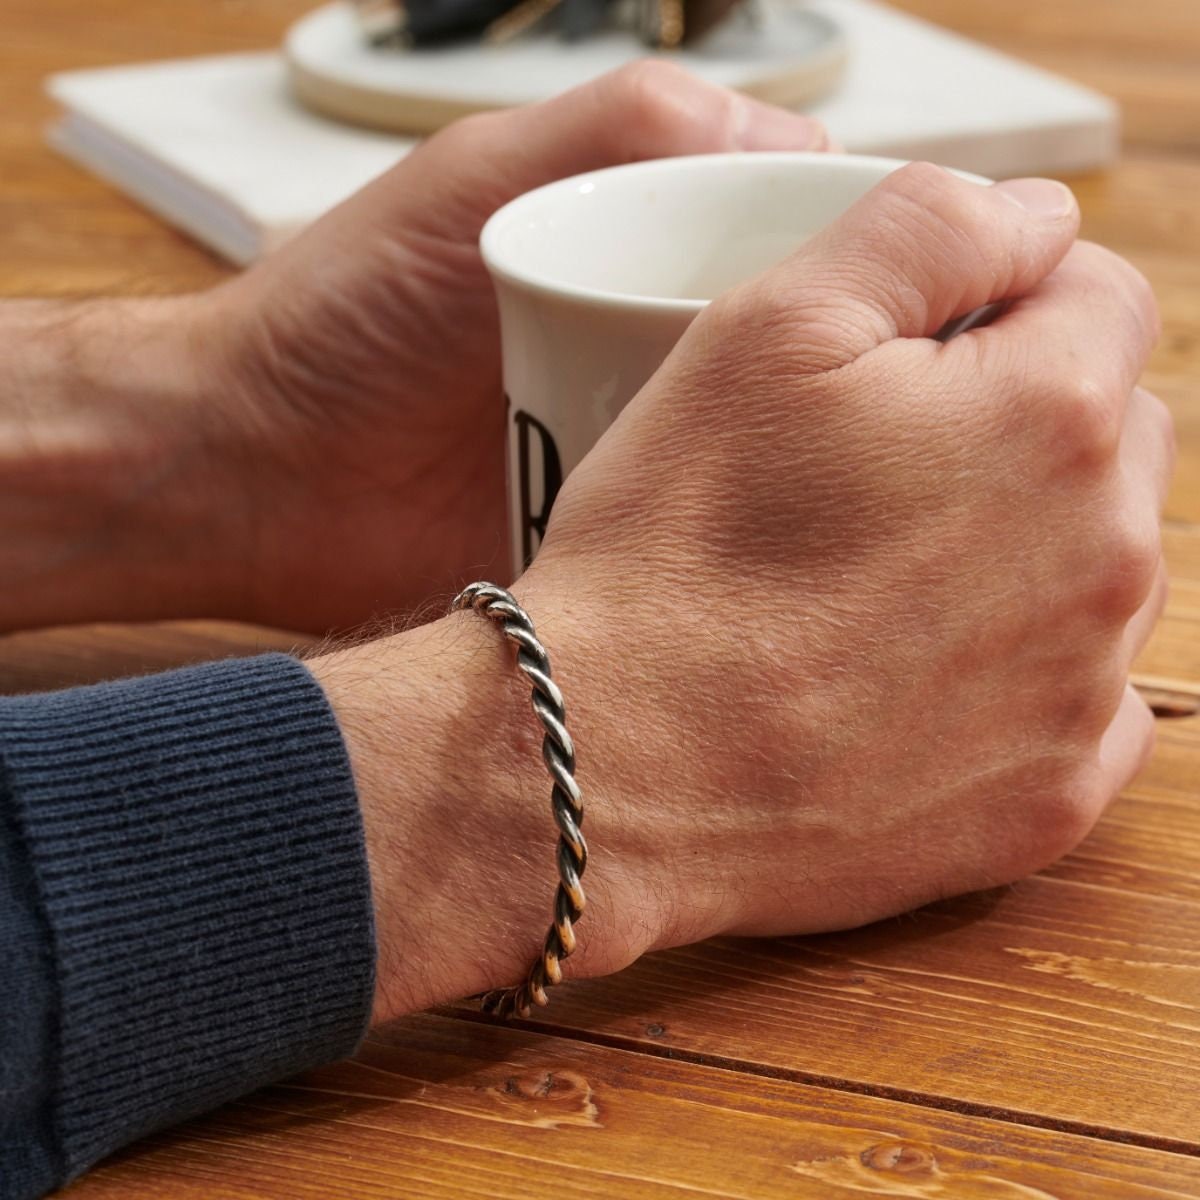 Twisted Oxidierte Silbermanschette Für Herren | Handarbeit Armband Manschette von PoshTottyDesigns